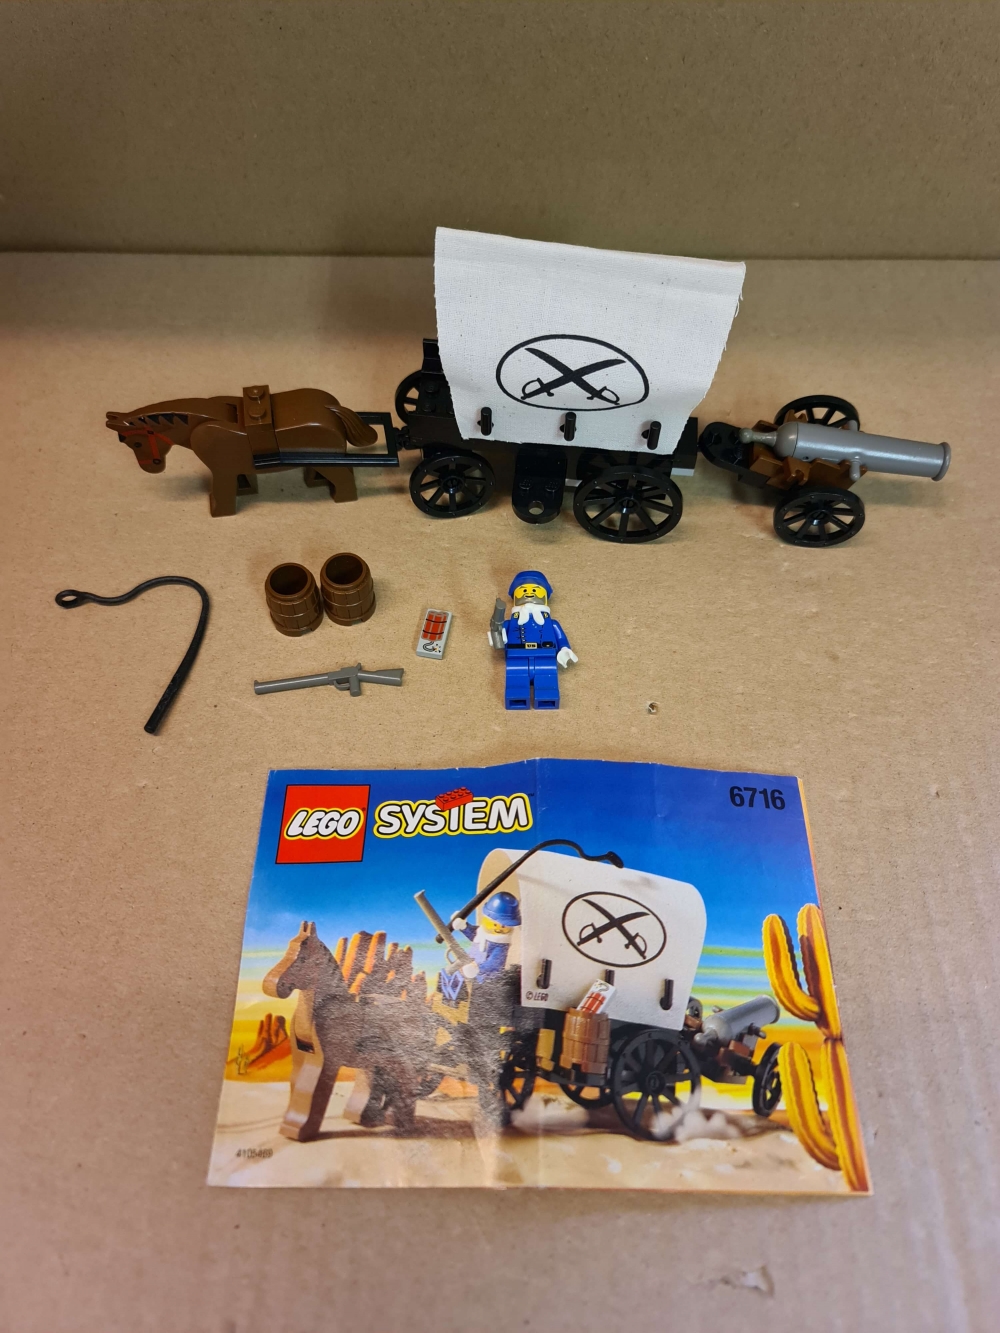 Sett 6716 fra Lego Western : Cowboys serien
Nydelig sett. Komplett med manual.